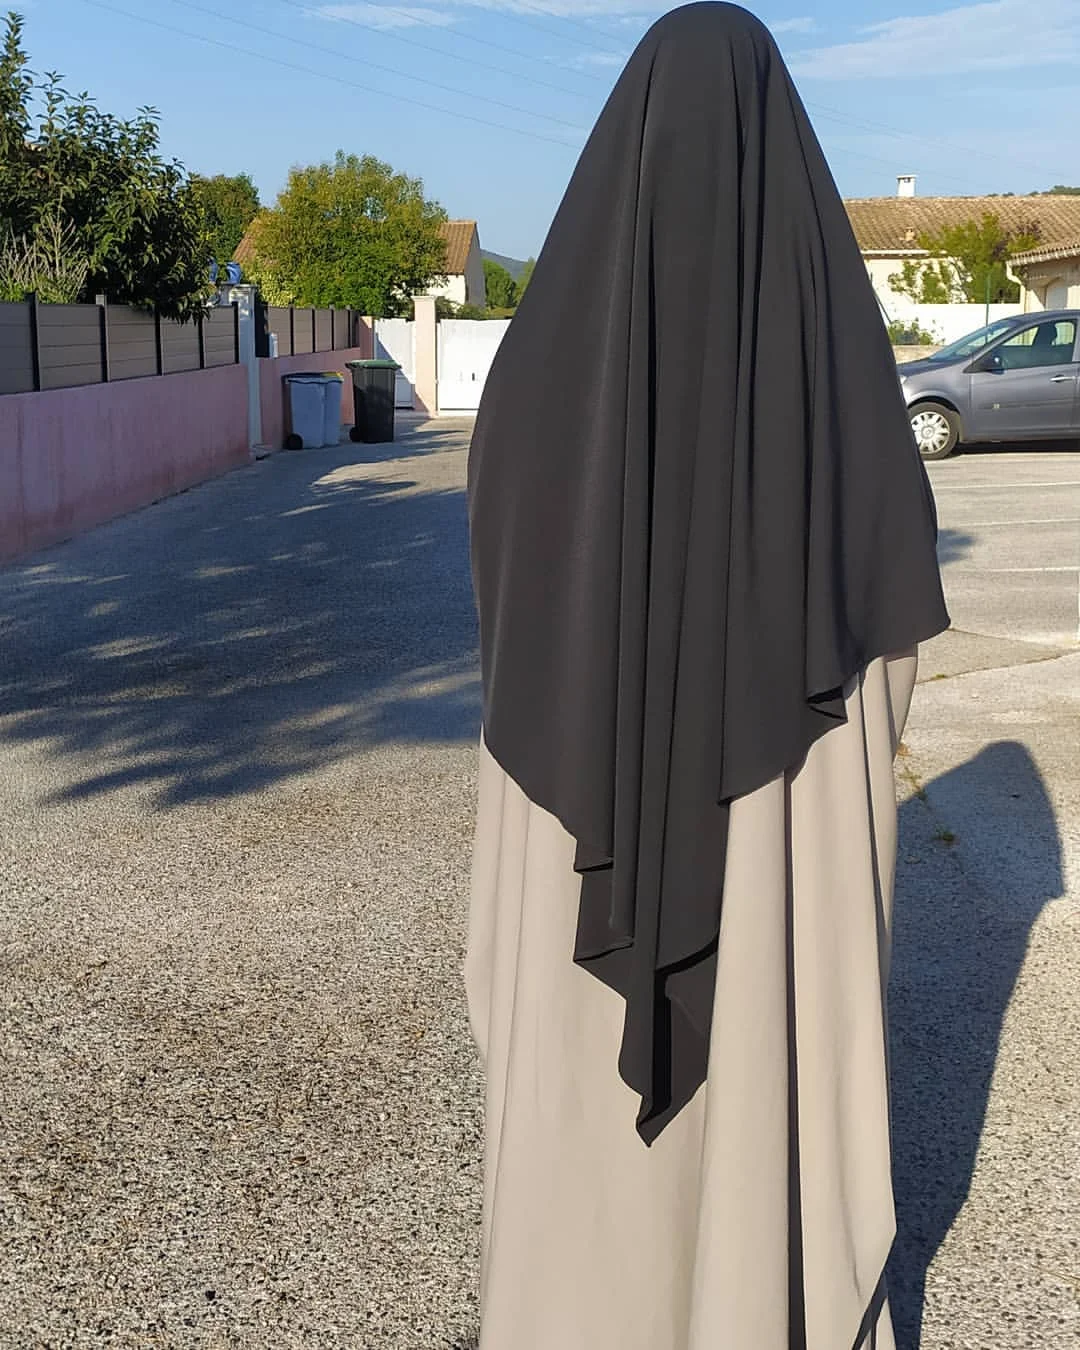 

Молитвенная одежда Рамадан ИД длинный химар мусульманский женский хиджаб шарф накидка без рукавов топы Abaya Jilbab Abaya s мусульманский арабский ...